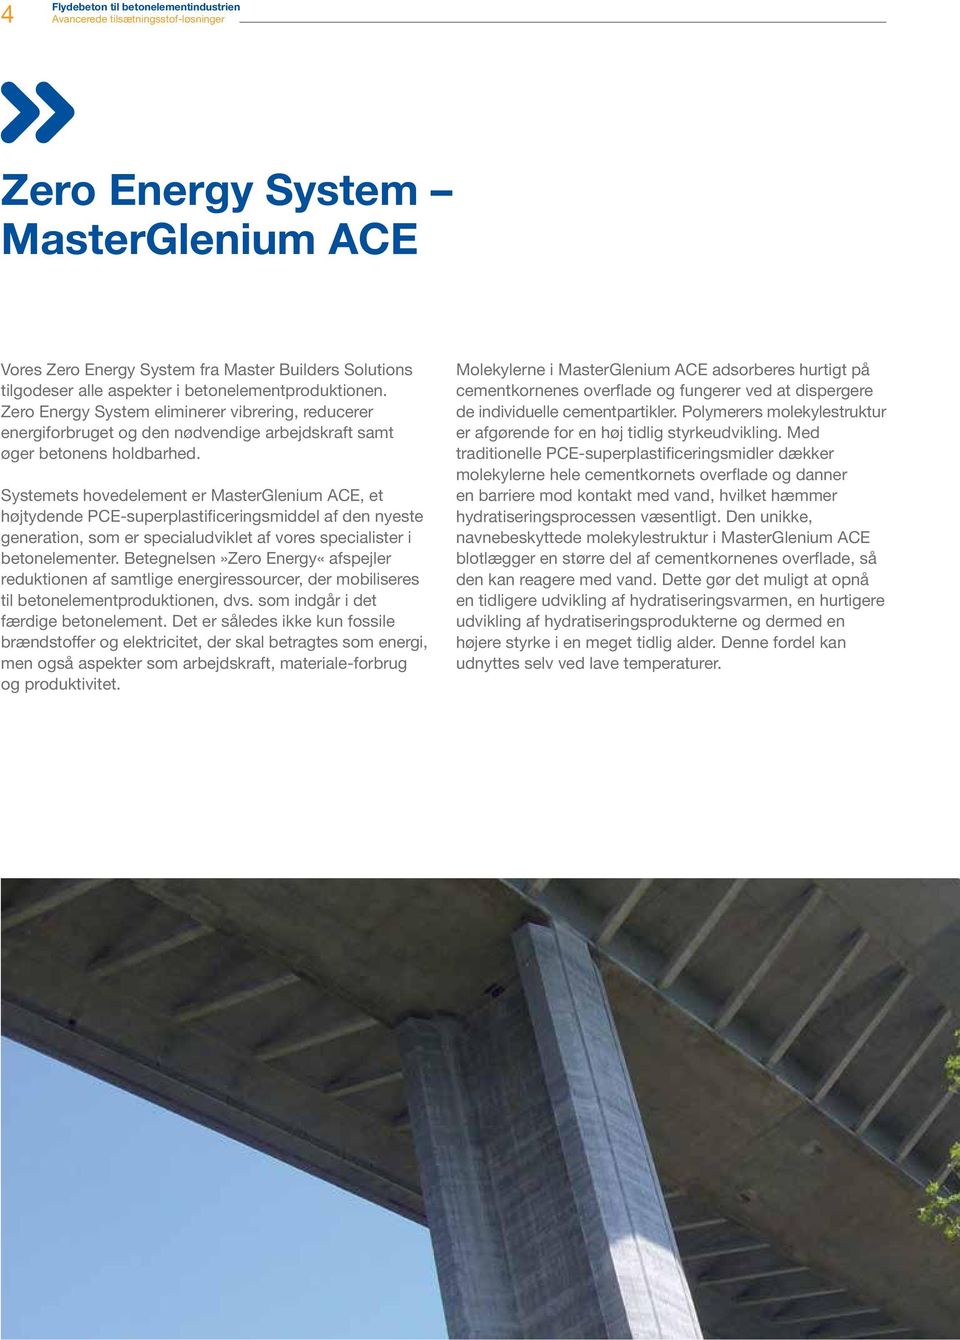 Systemets hovedelement er MasterGlenium ACE, et højtydende PCE-superplastificeringsmiddel af den nyeste generation, som er specialudviklet af vores specialister i betonelementer.